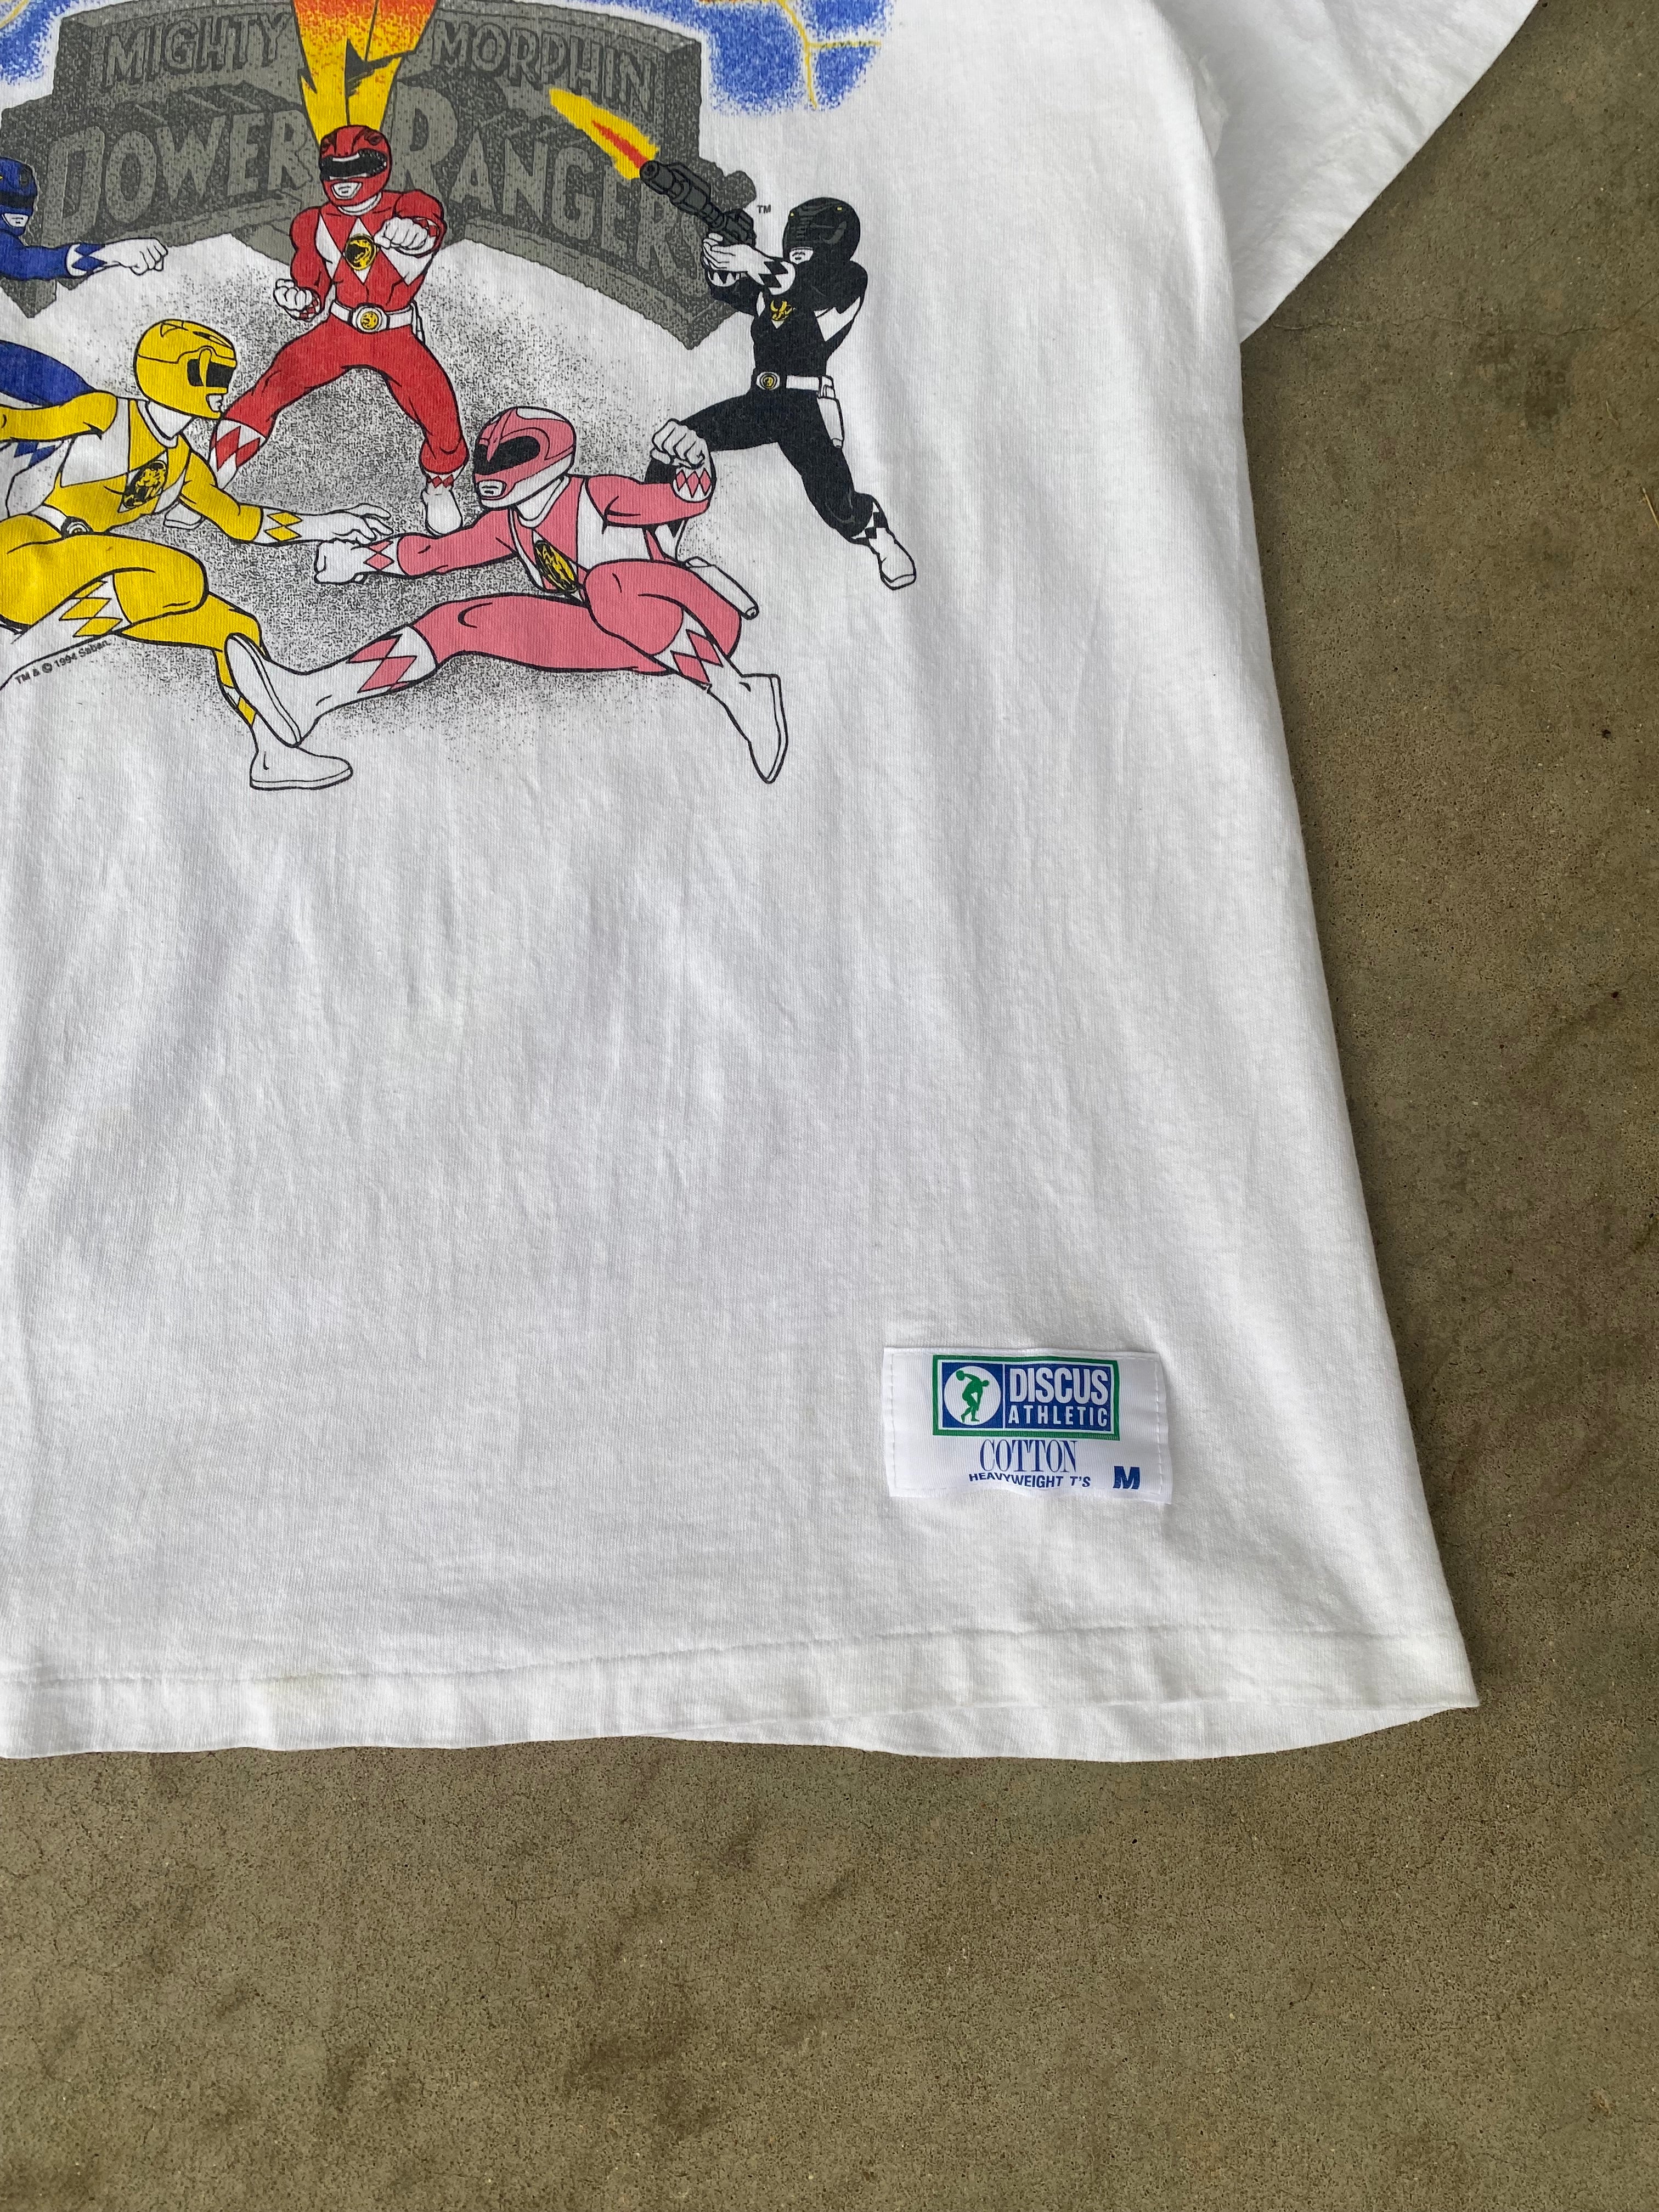 1994 Power Rangers "Mighty Morphin" T-Shirt (S/M)